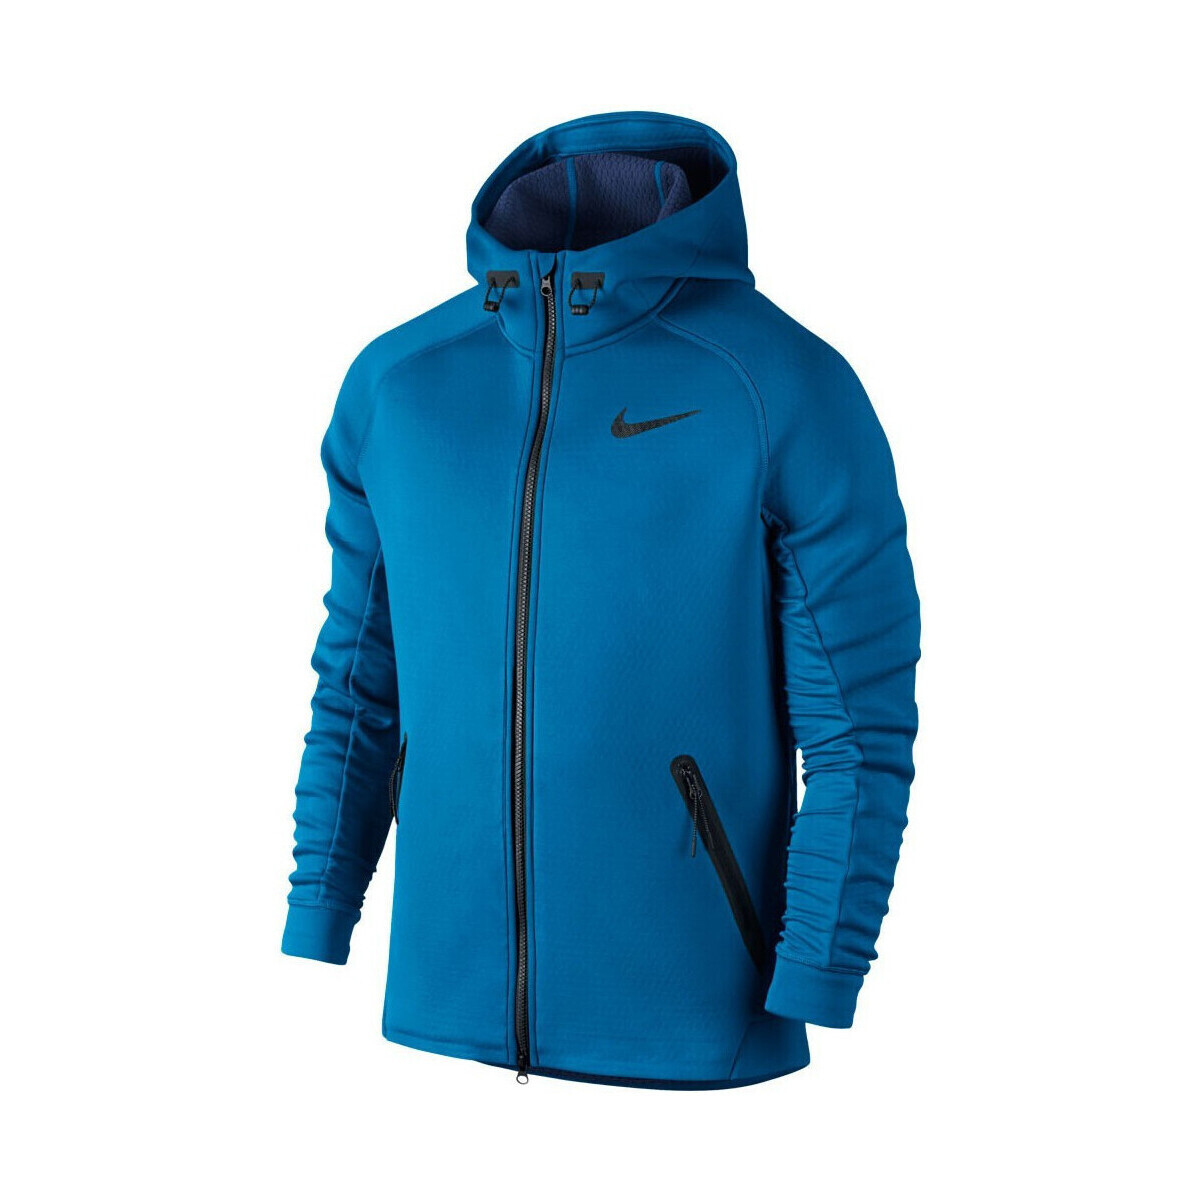 Vêtements Homme Sweats Nike Tech Fleece Windrunner Bleu